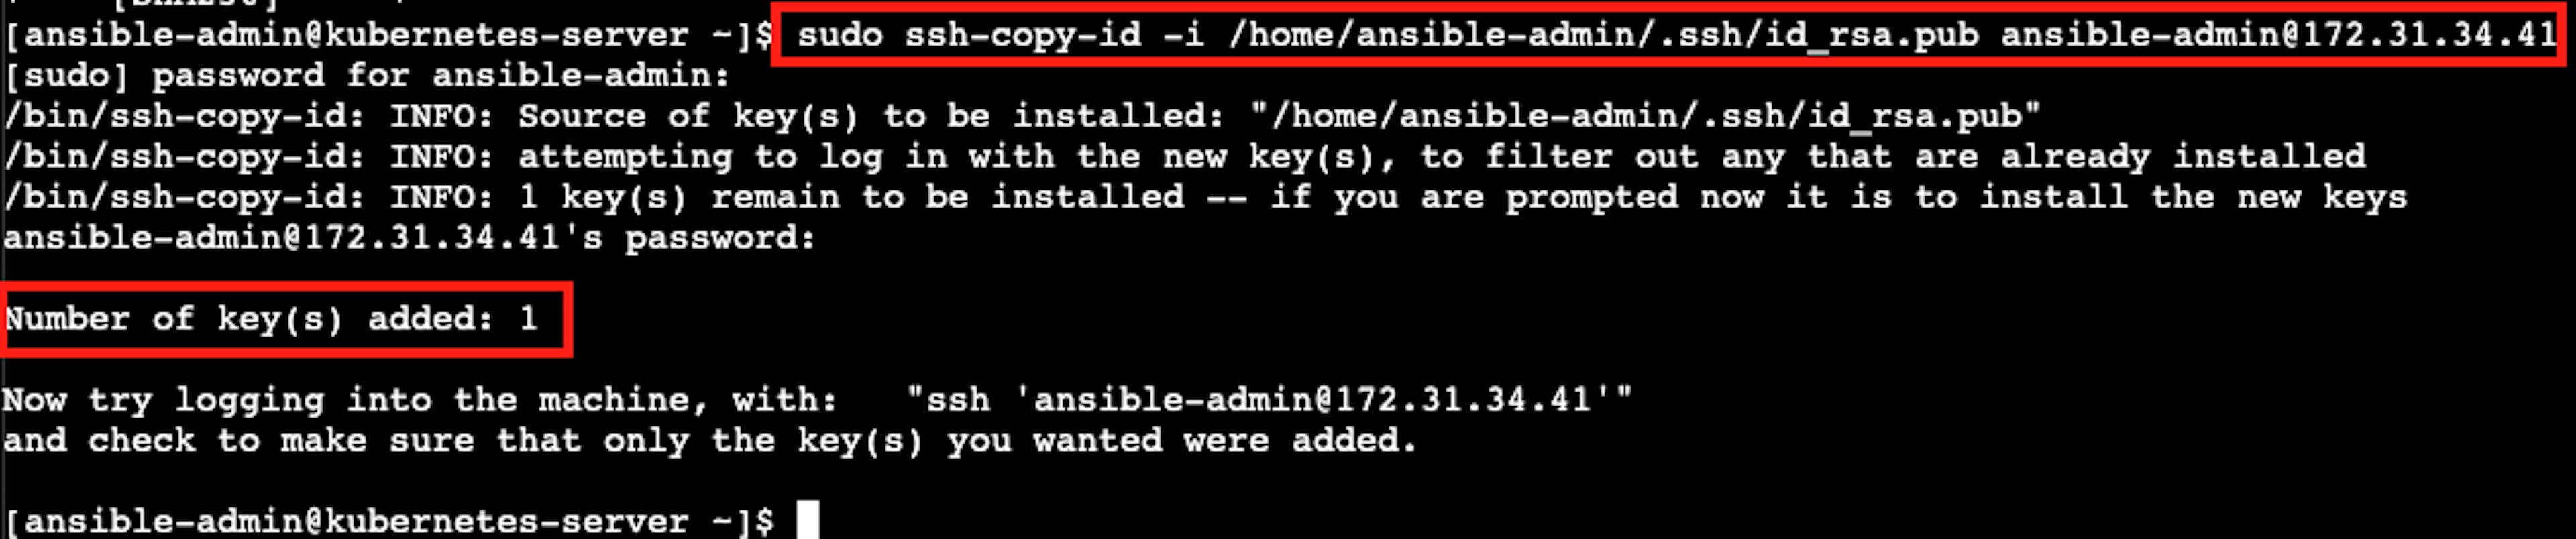 La capture d'écran du résultat réussi de l'installation de l'authentification SSH sans mot de passe